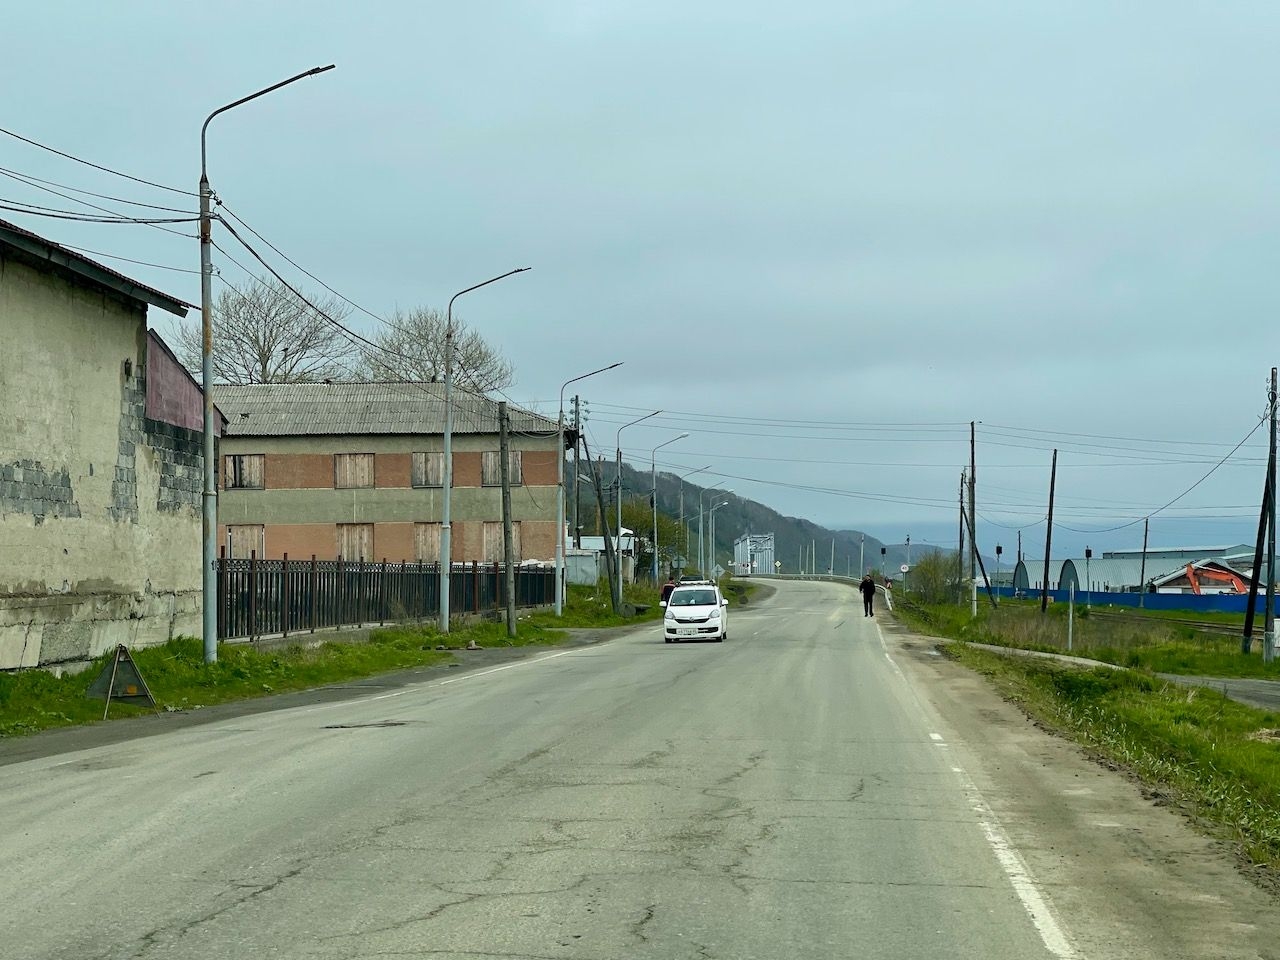 Сахалин день 2 начало: Дорога на север и пенная дискотека Восточный, Россия